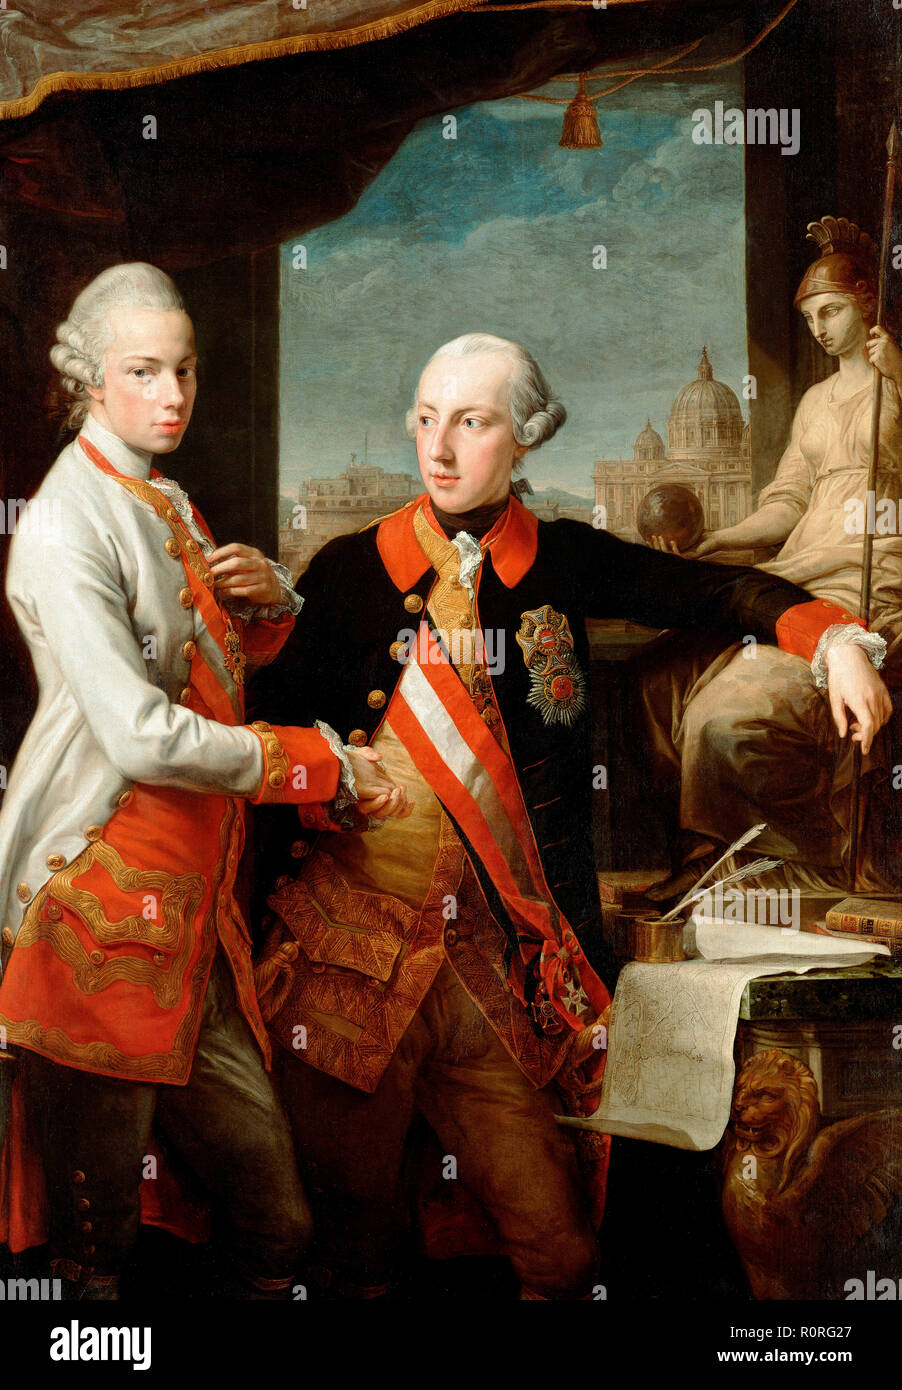 Portrait de l'empereur Joseph II (à droite) et son jeune frère le Grand-duc Léopold de Toscane (à gauche), qui deviendra plus tard Saint Empereur romain comme Léopold II. Pompeo Batoni, 1769 Banque D'Images